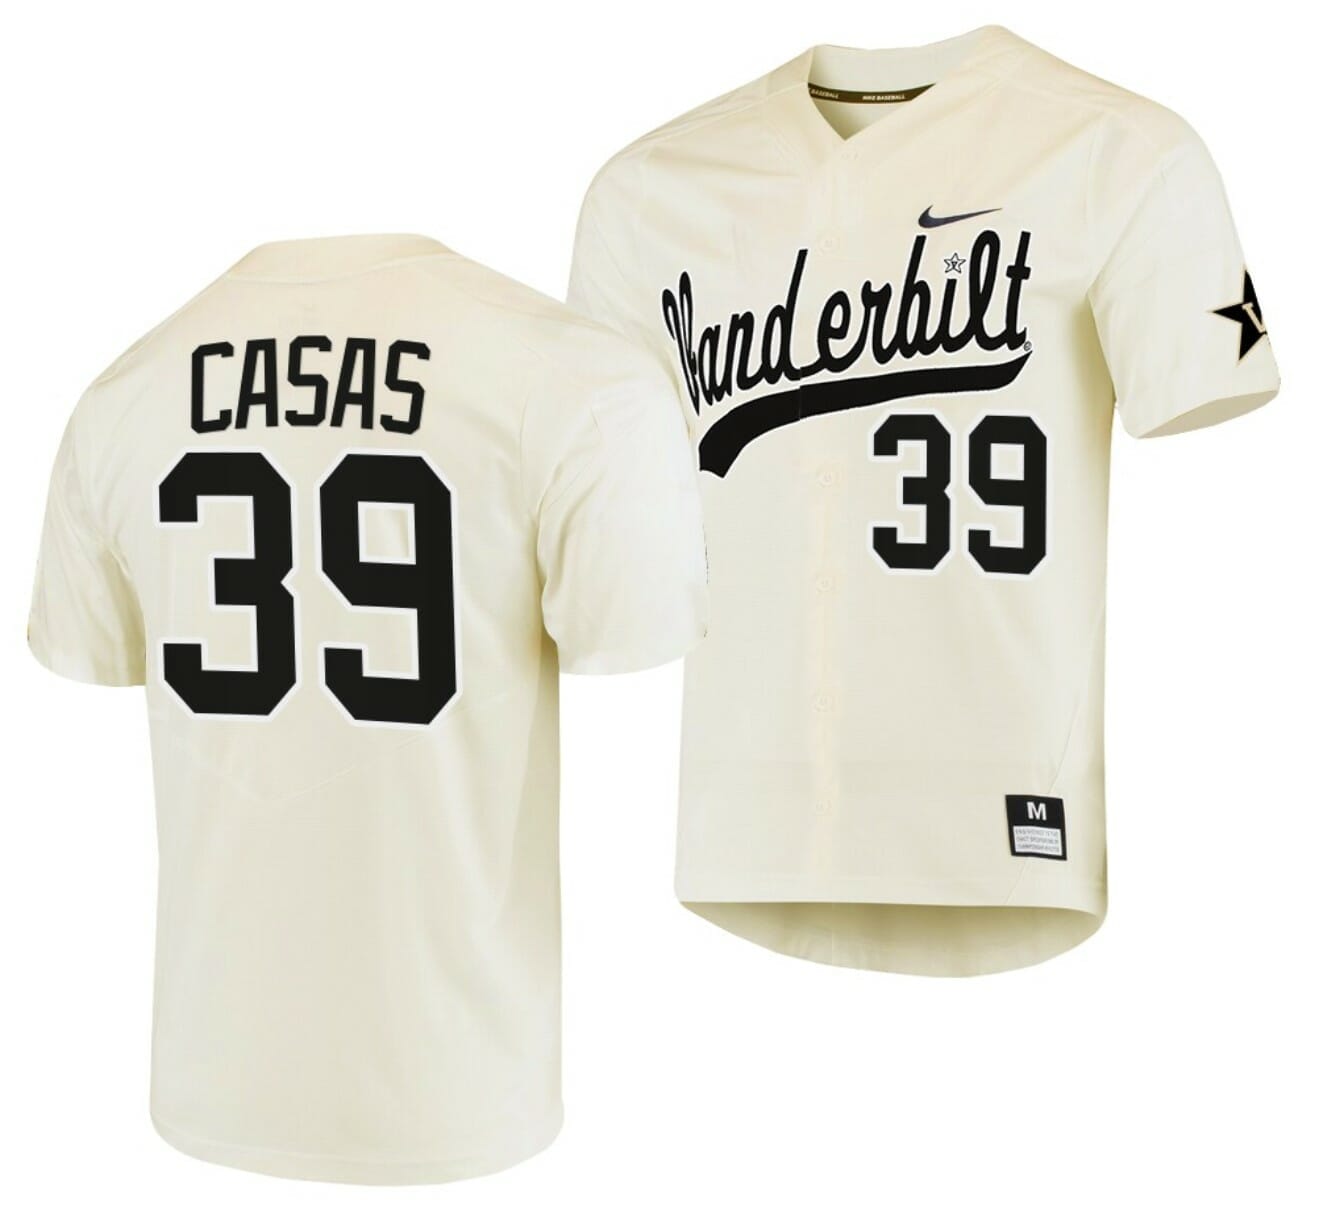 cream\ vanderbilt baseball uniforms